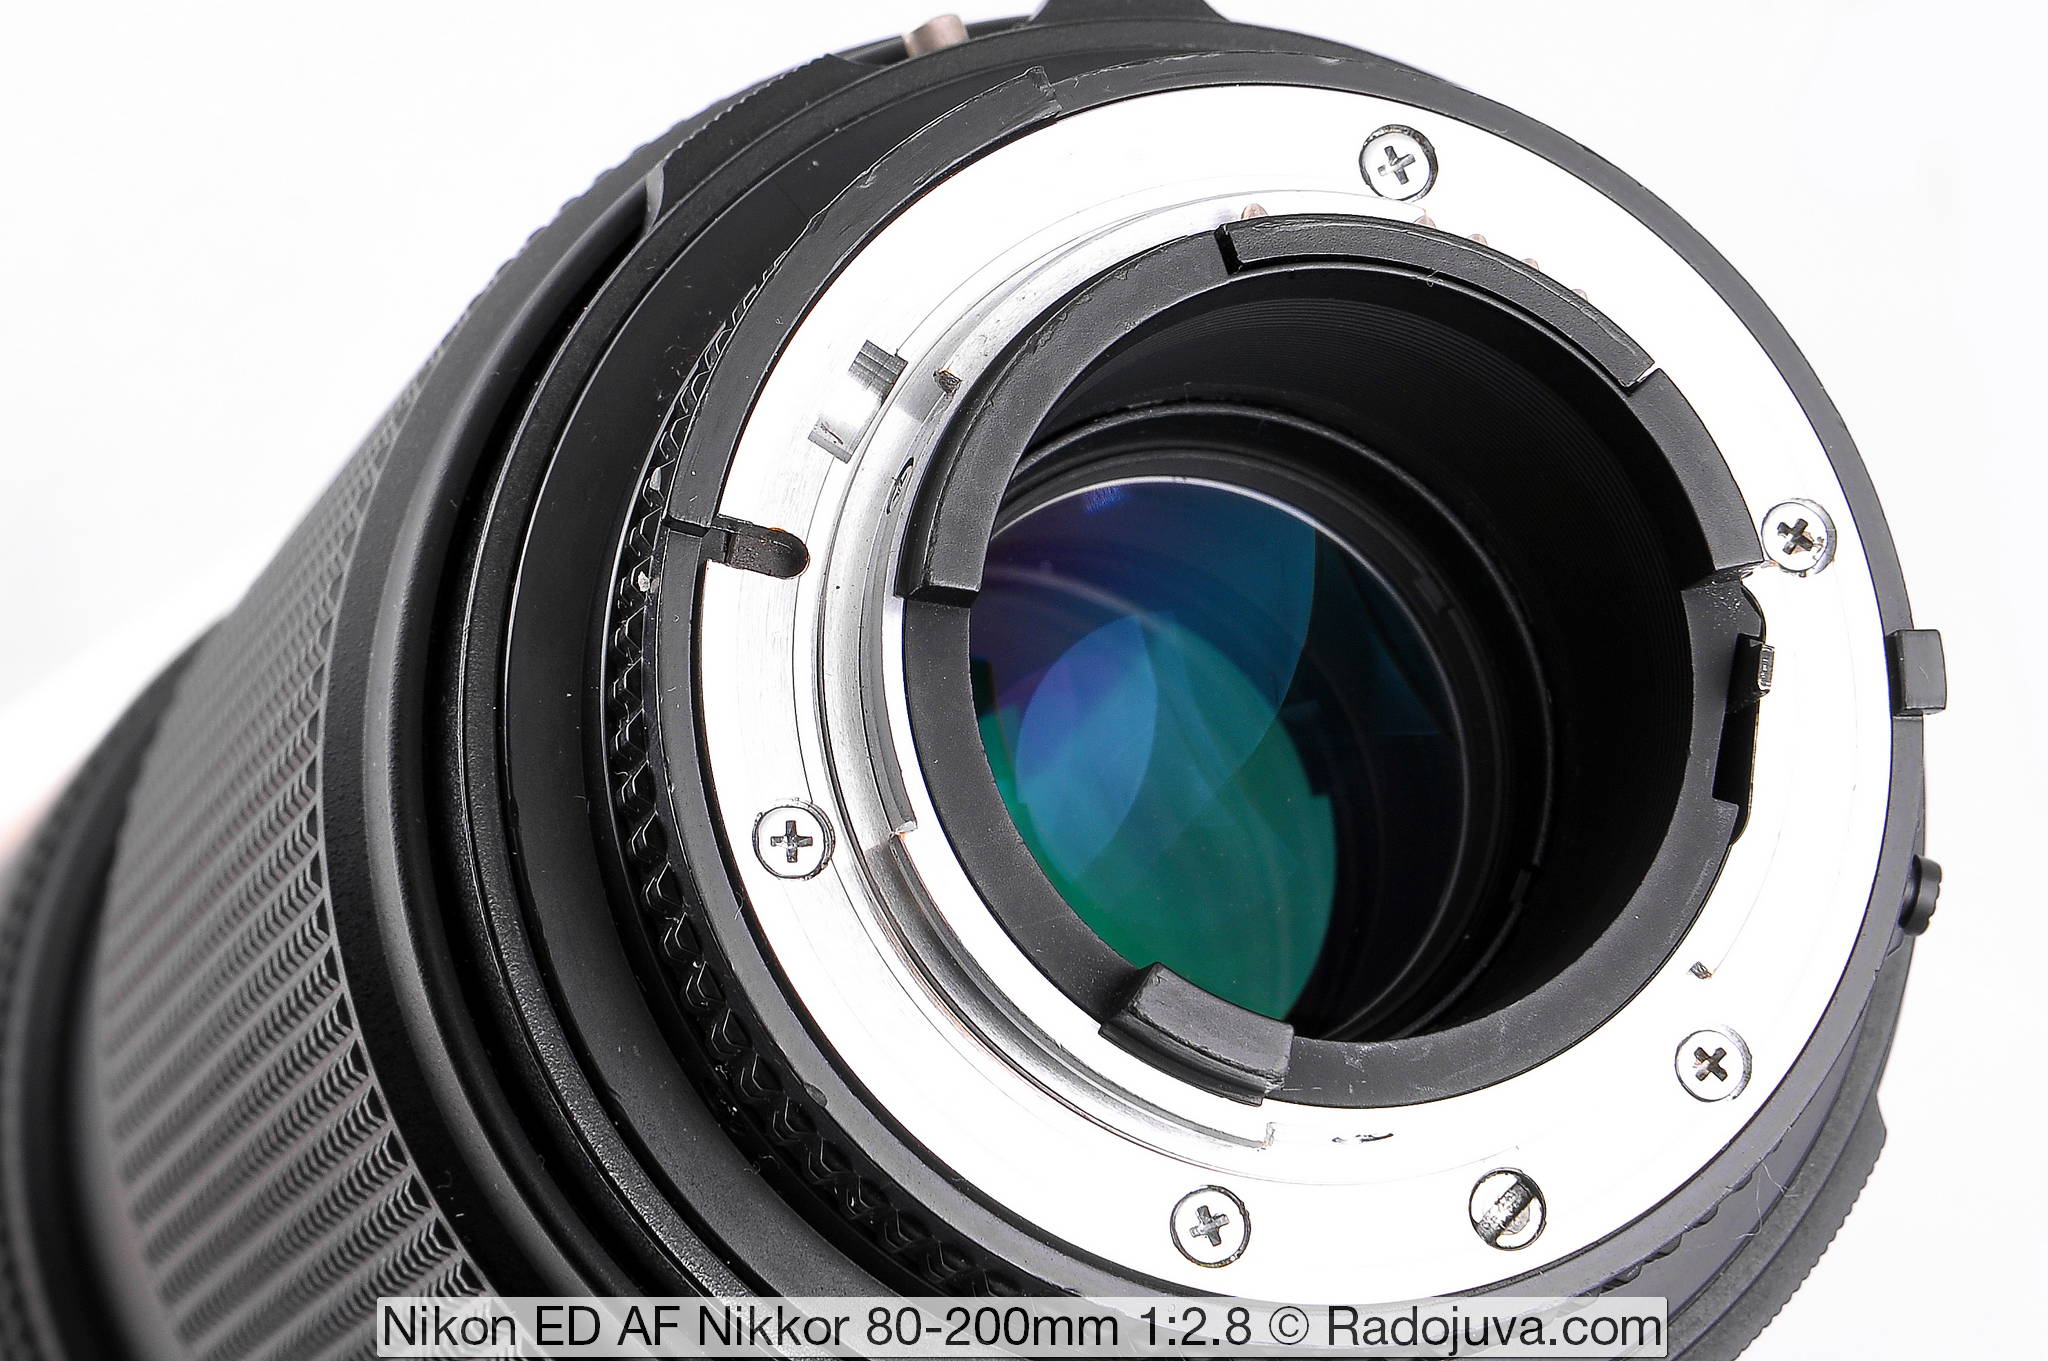 Nikon ED AF Nikkor 80-200mm 1: 2.8 (MKI)